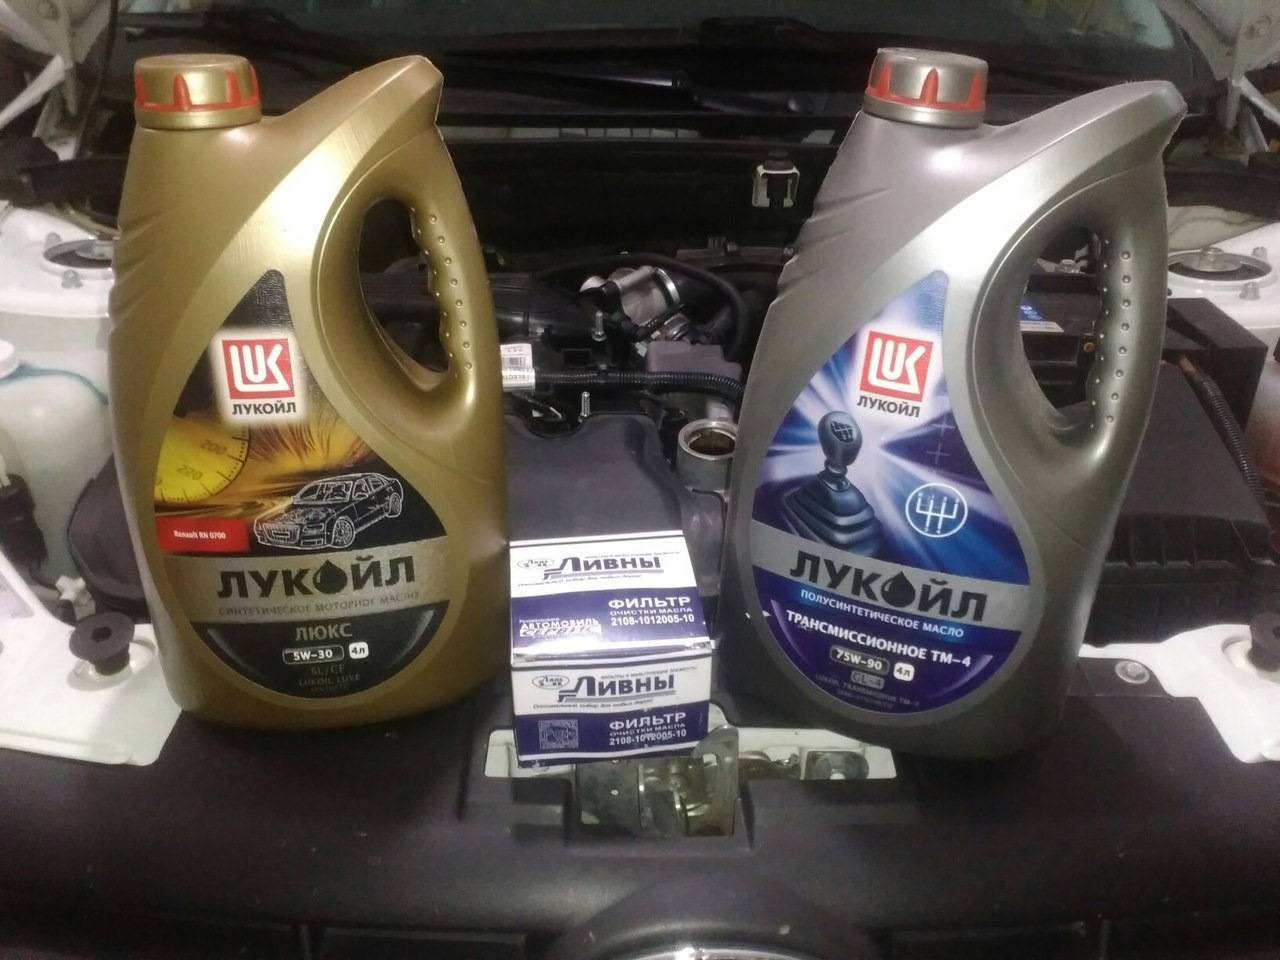 Какое масло лучше лить в двигатель шевроле нива | nivachevrole.ru
какое масло лучше лить в двигатель шевроле нива | nivachevrole.ru